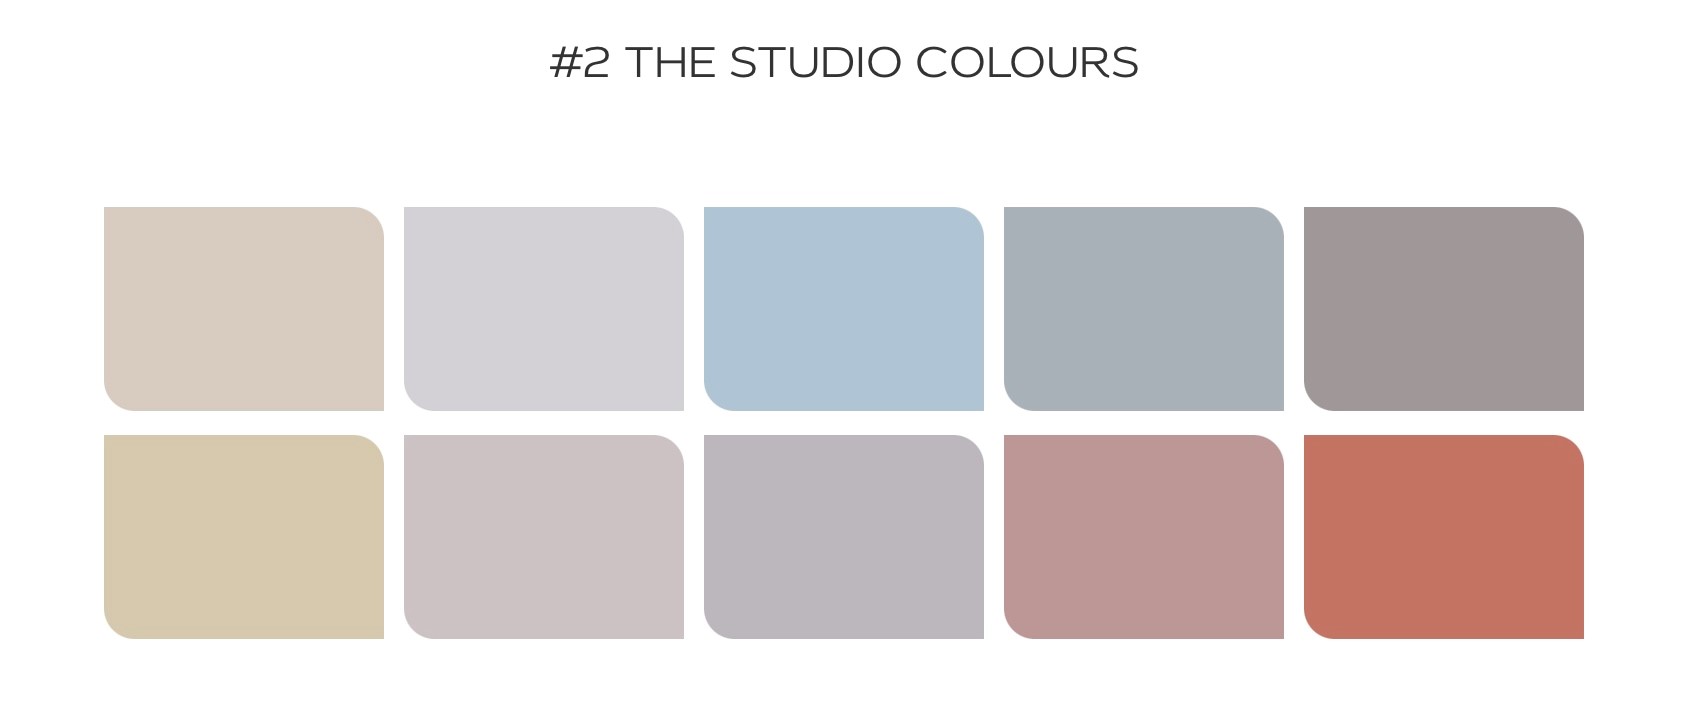 Dulux Studio Colour Palette